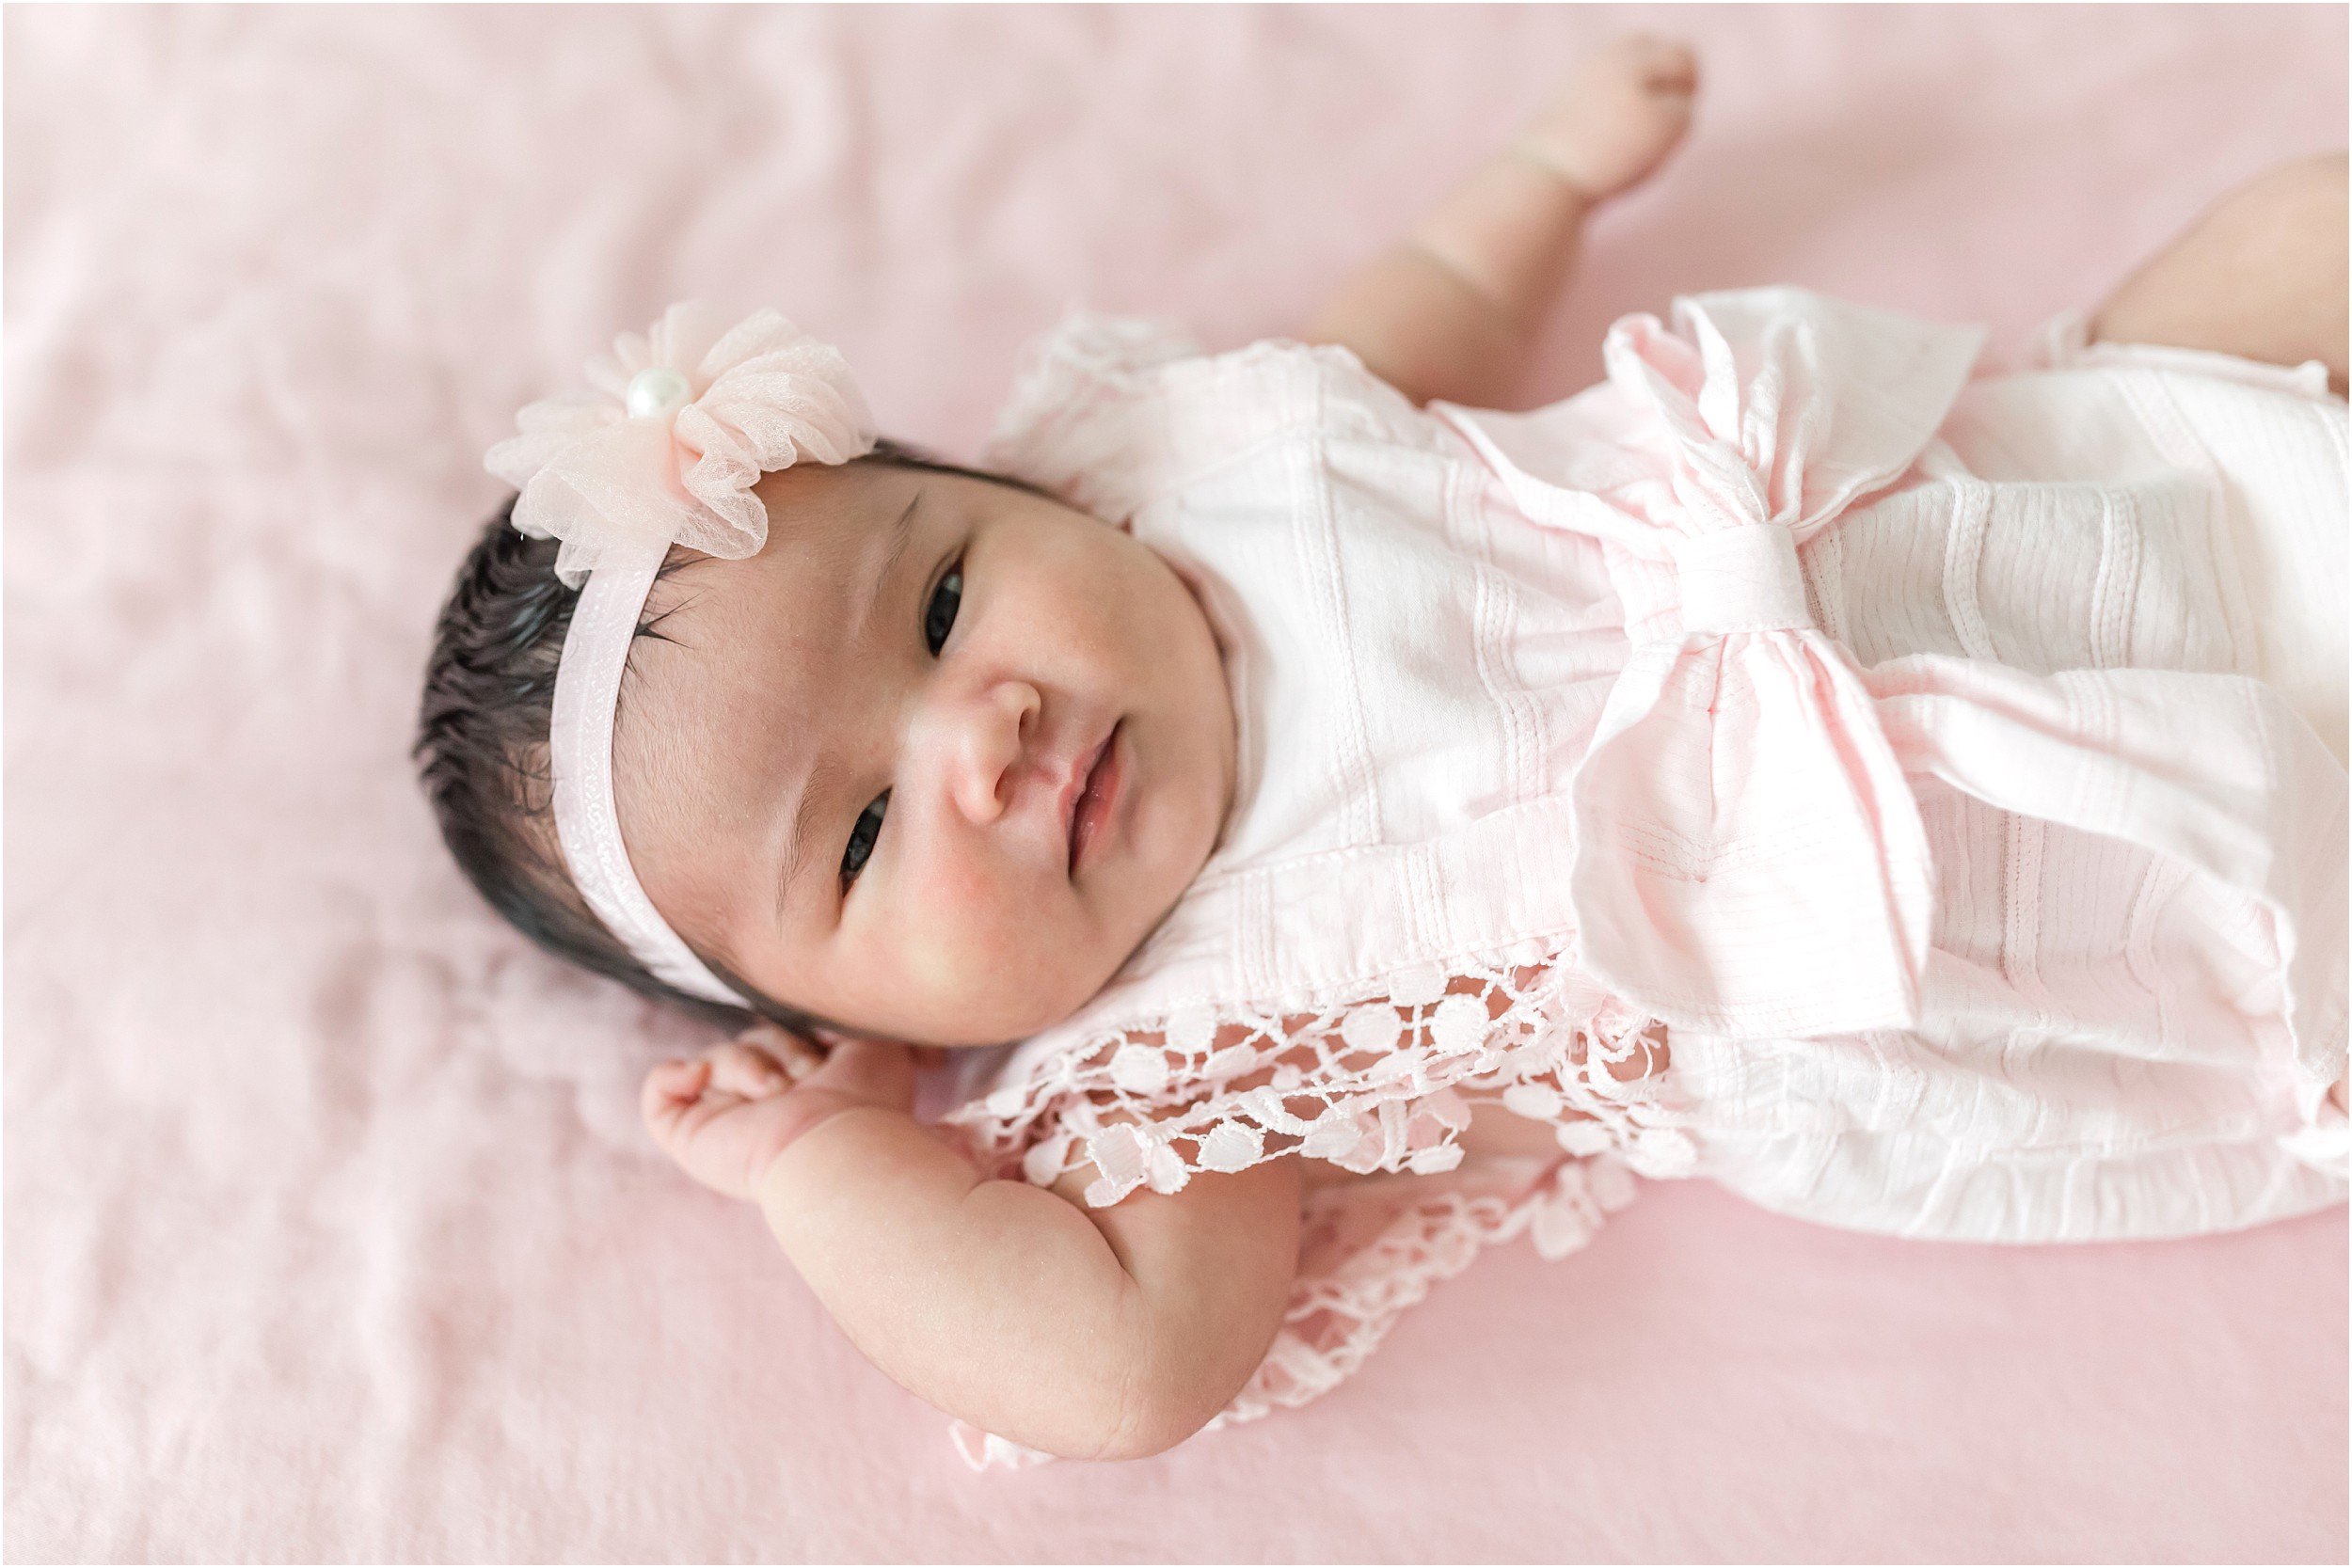 Malabanan Newborn-150_maryland-newborn-photography-annagracephotography-maryland-photographer.jpg